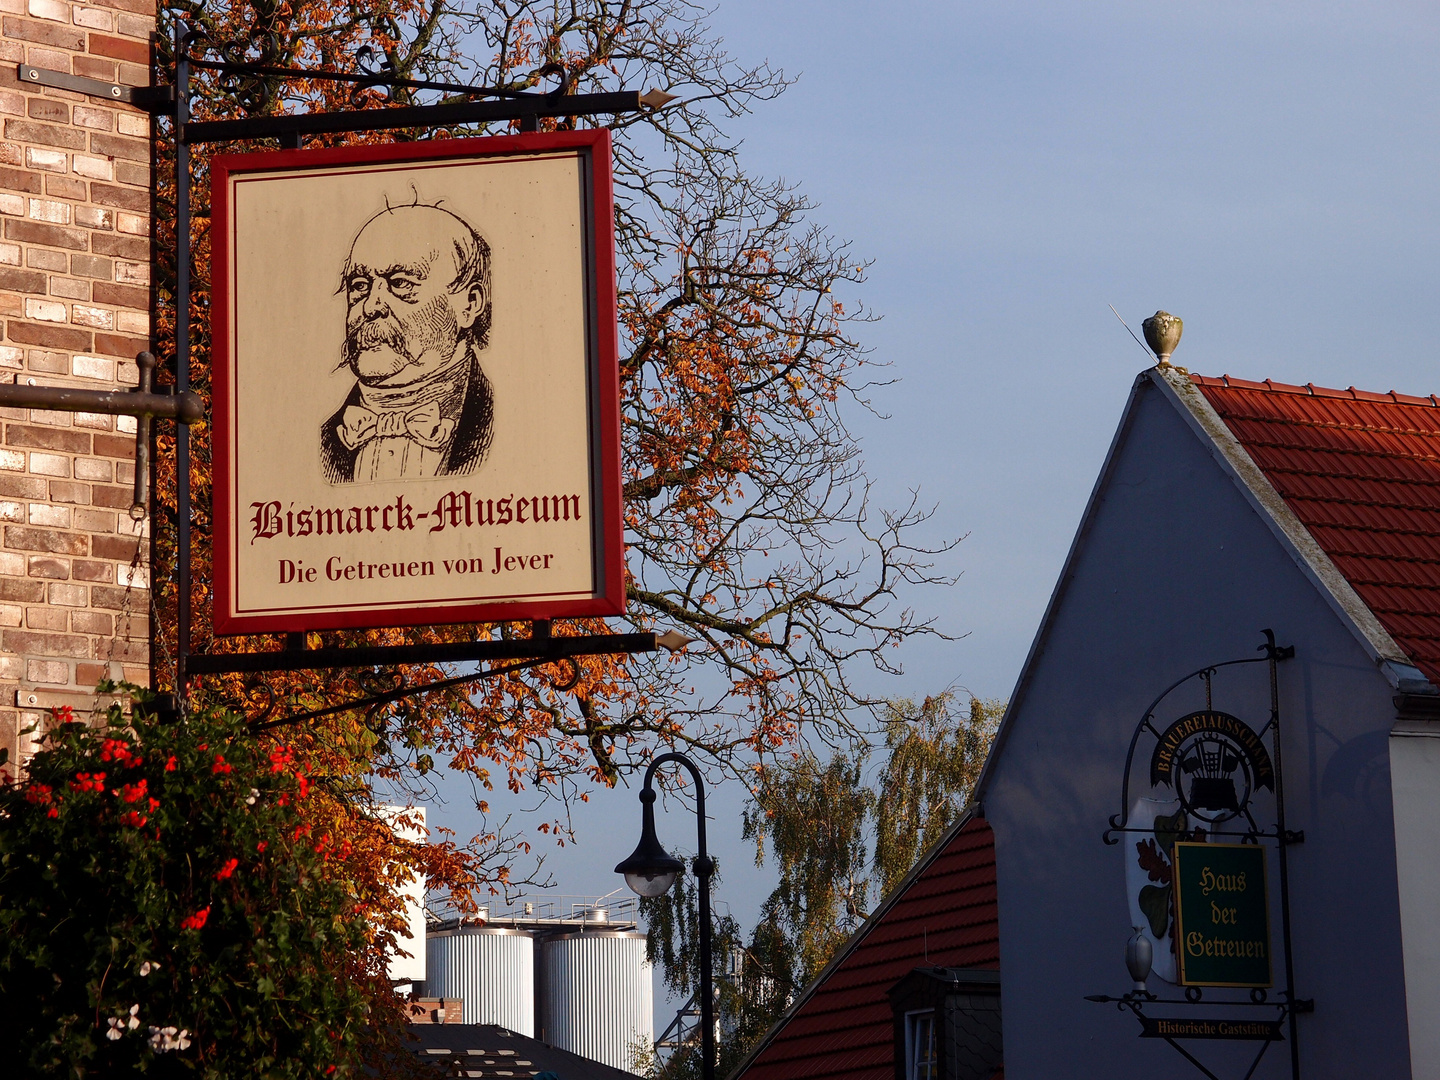 Bismarck-Museum / Jever-Brauerei / Haus der Getreuen